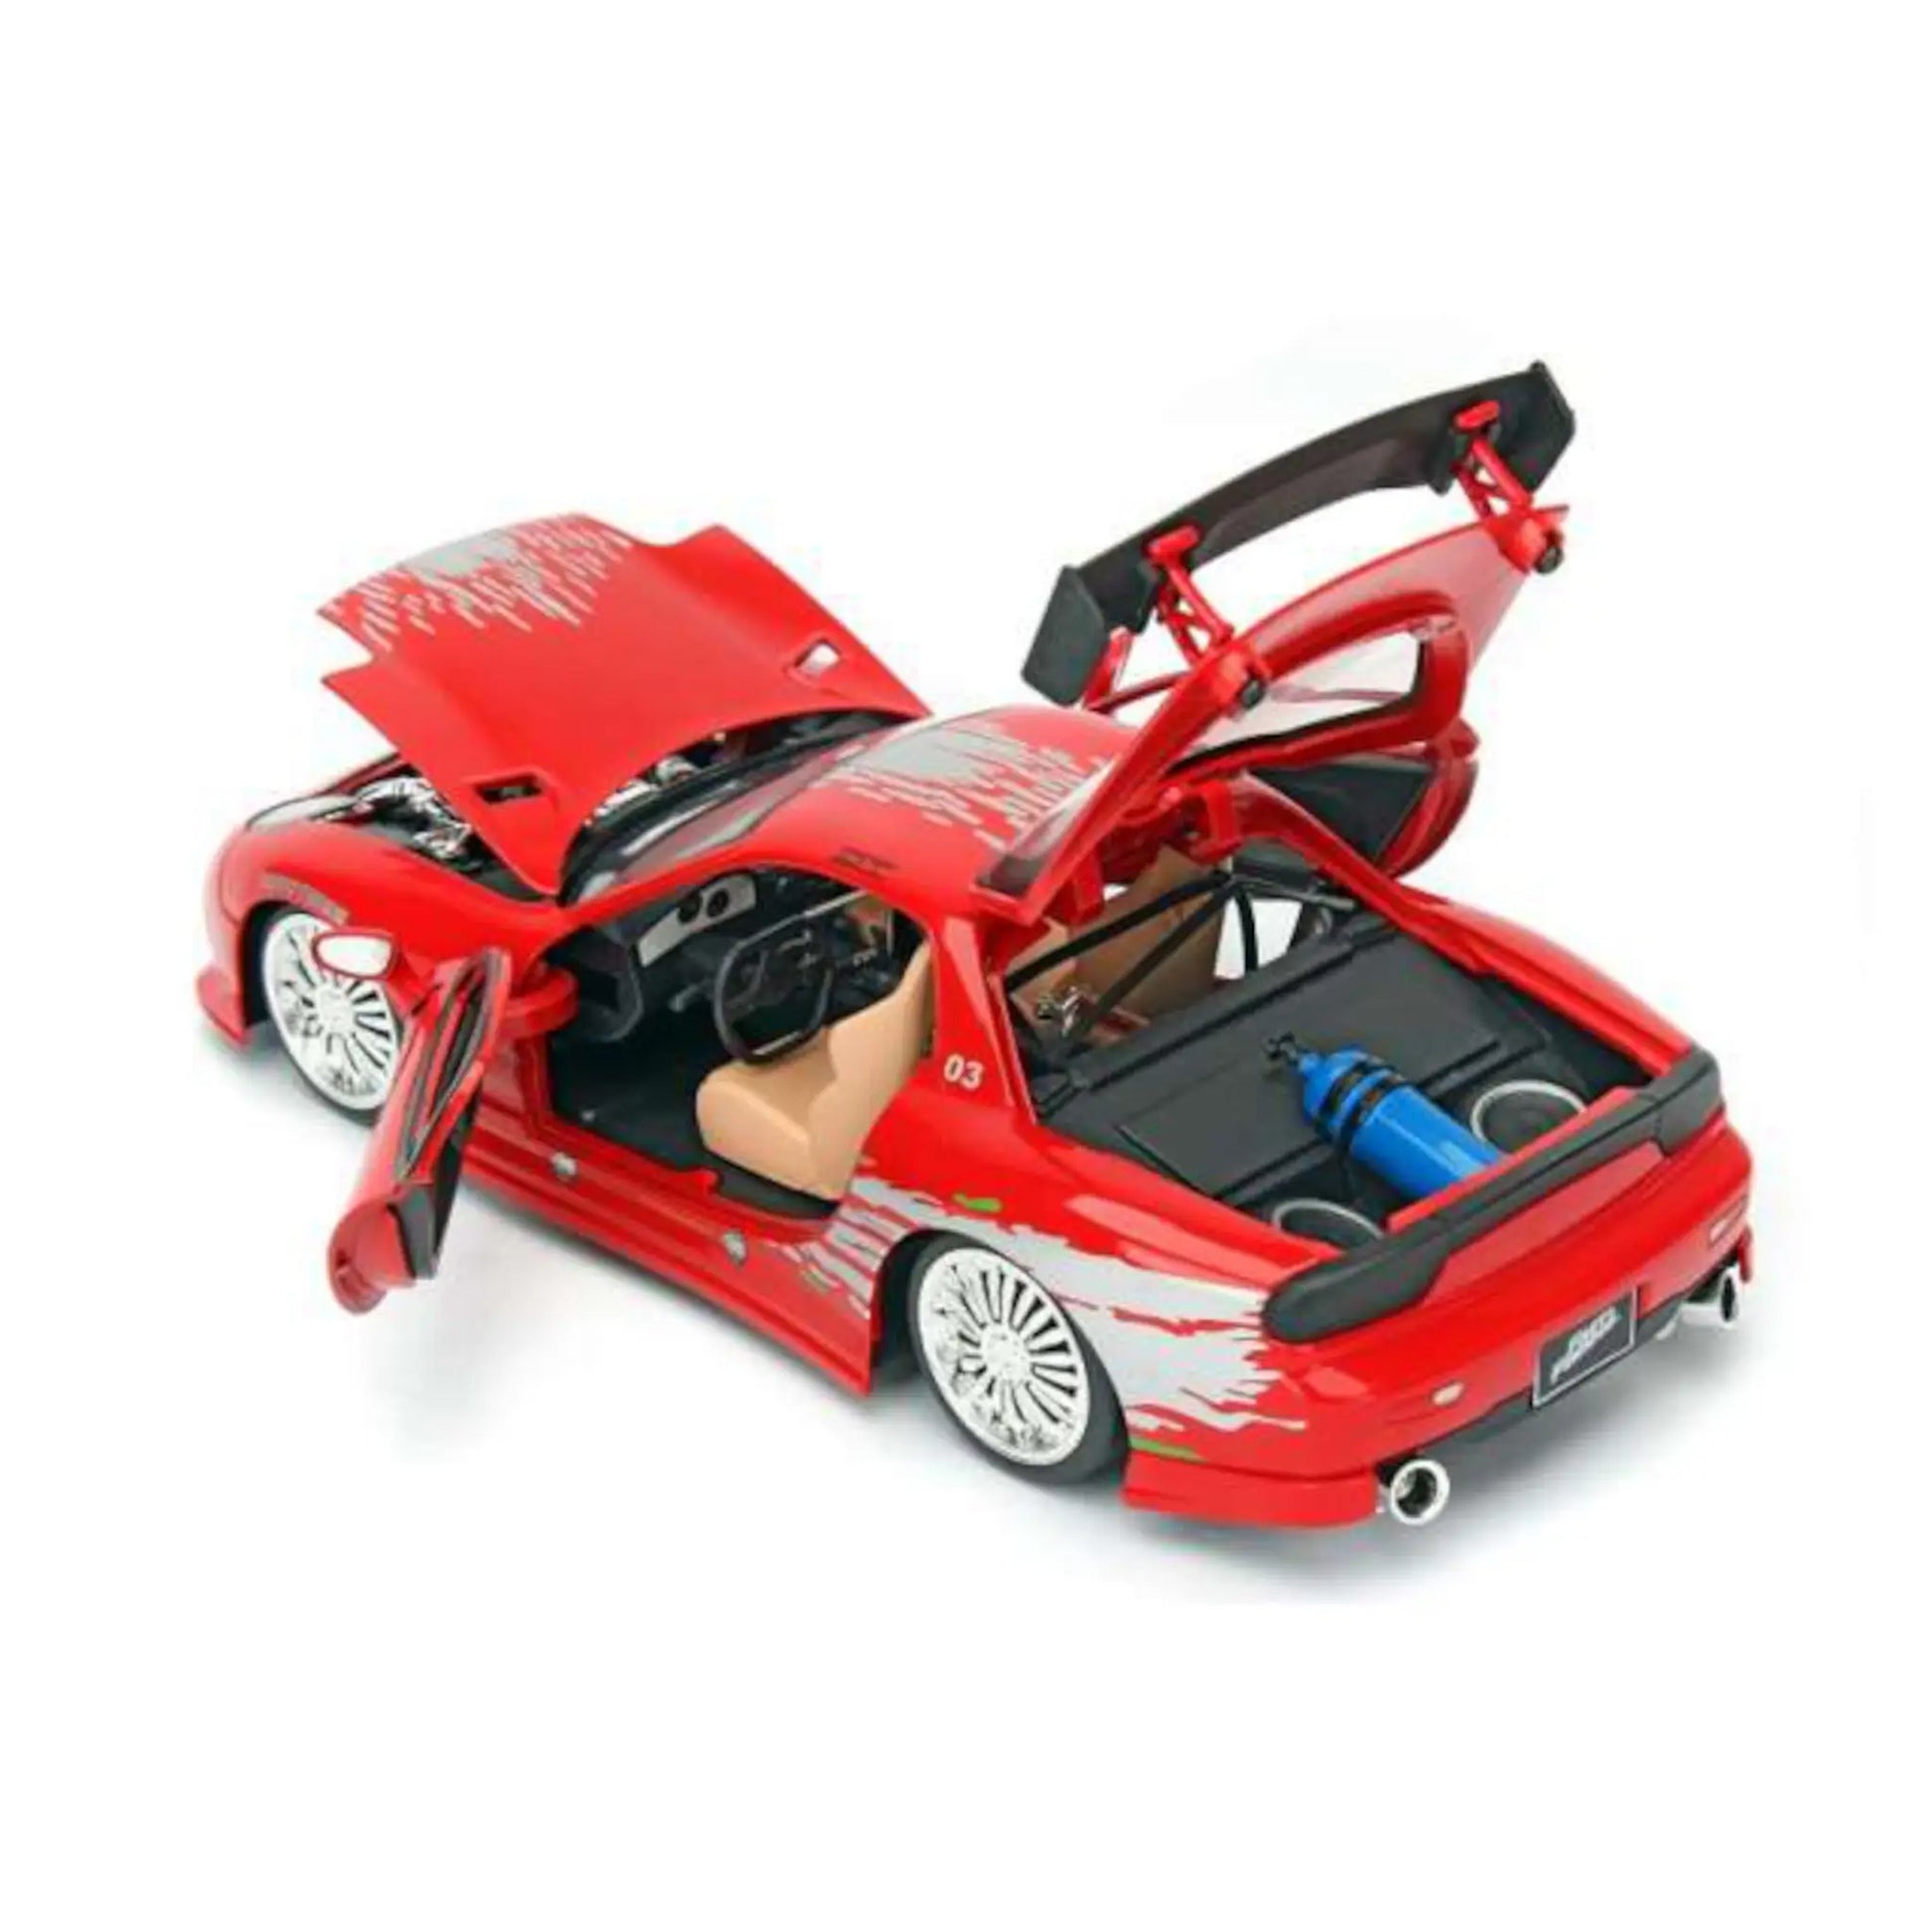 Fast and Furious 7 1:24 Series, modèle de voiture en alliage, artisanat,  décoration, collection, jouet, cadeau